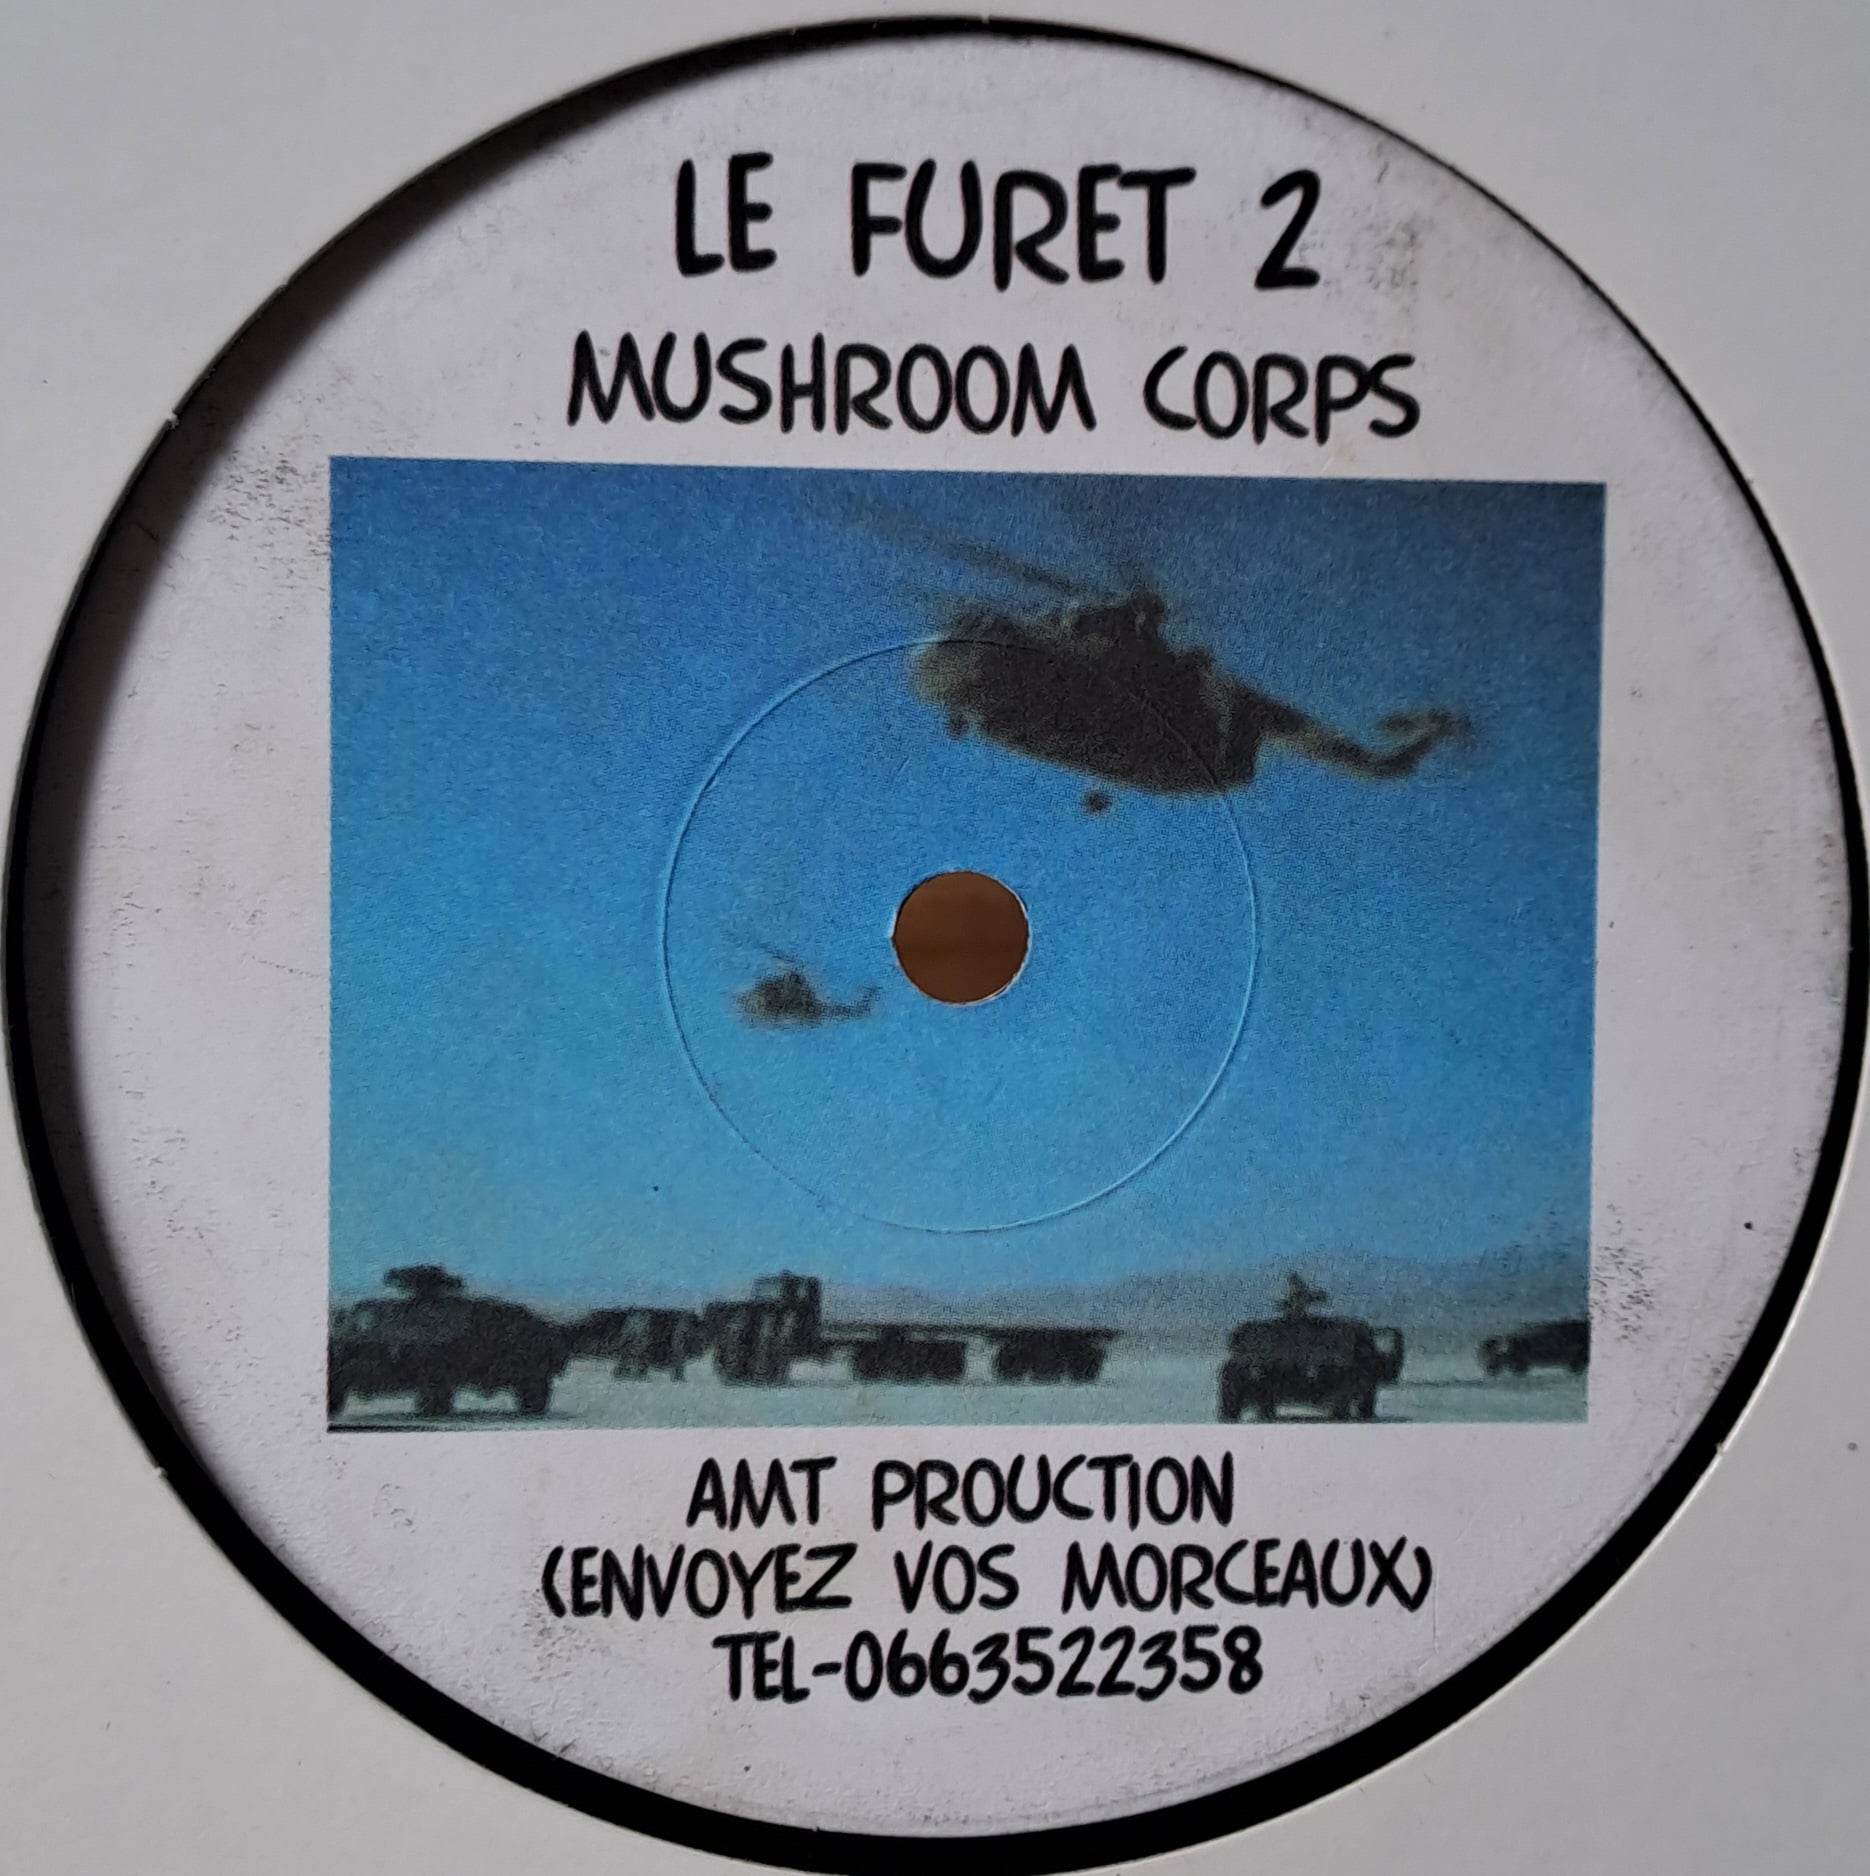 Le Furet 002 - vinyle techno